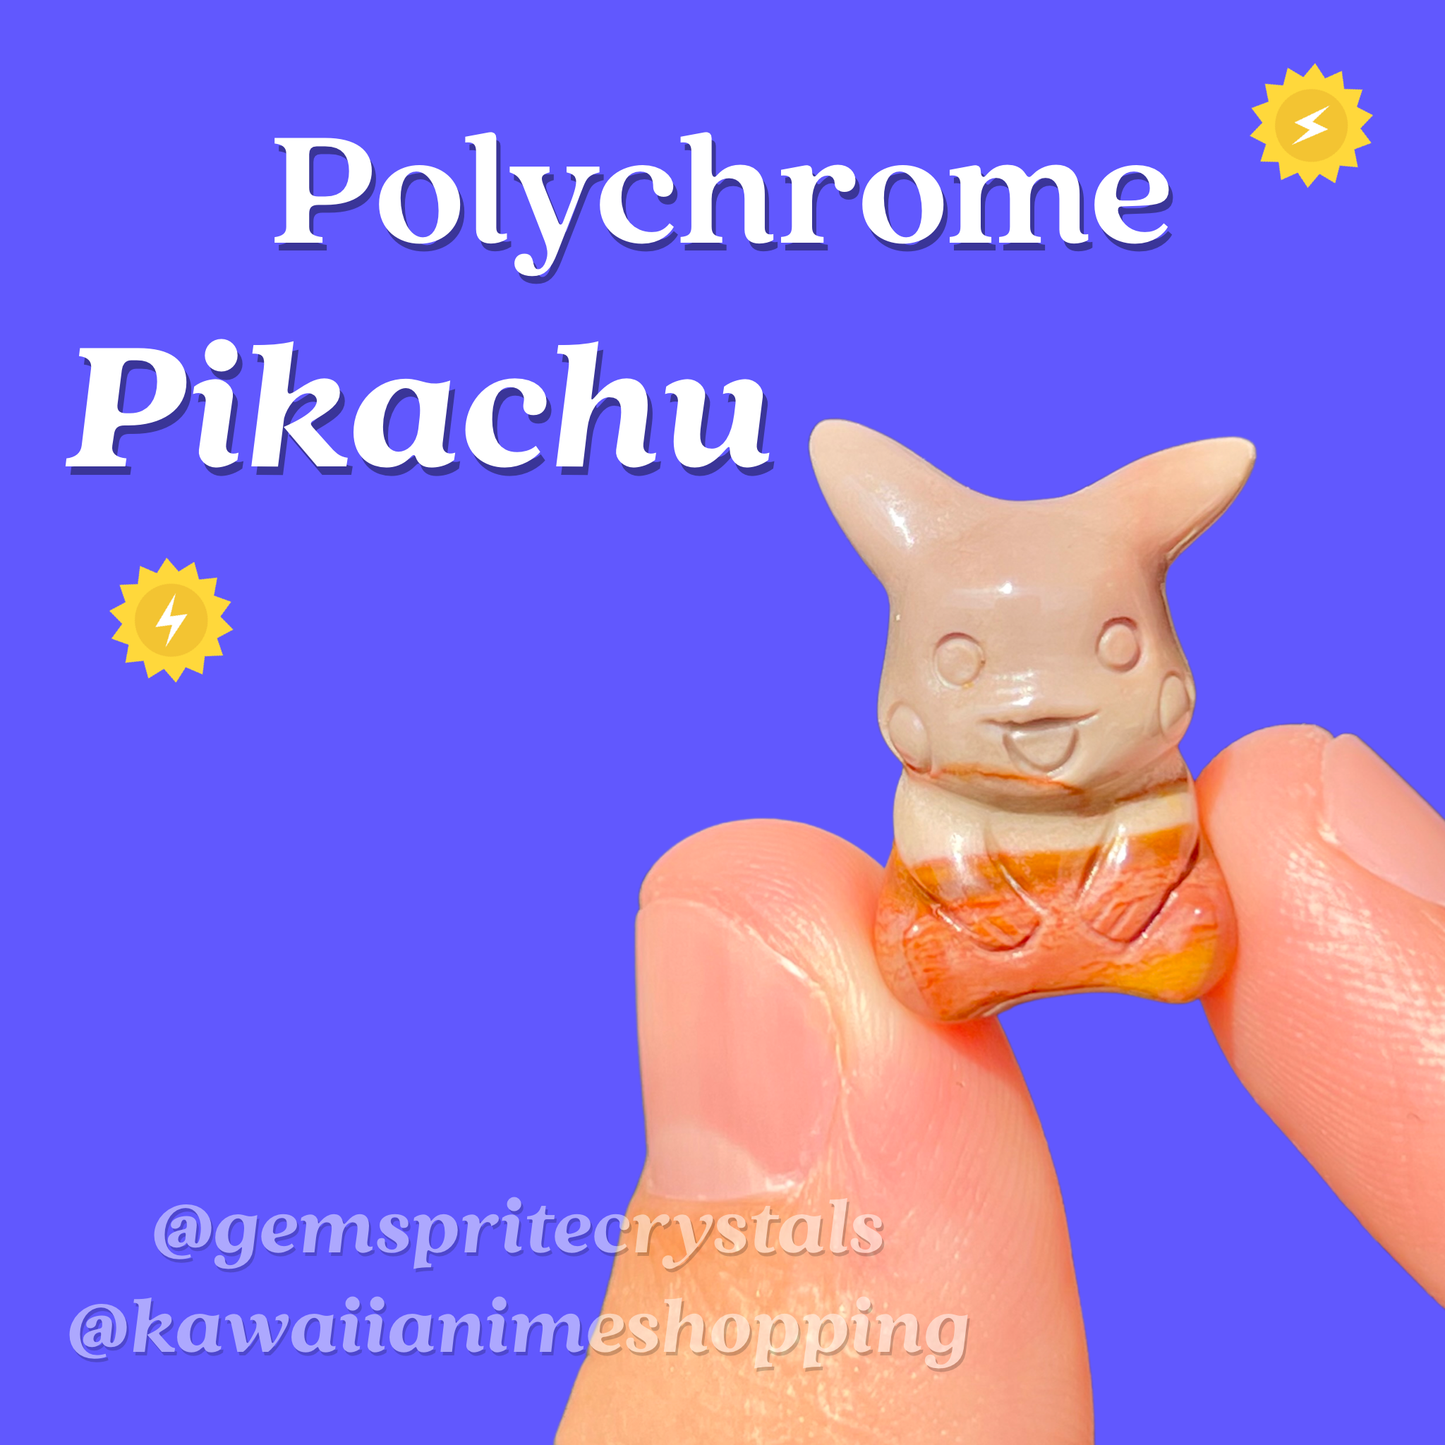 Polychrome Pikachu